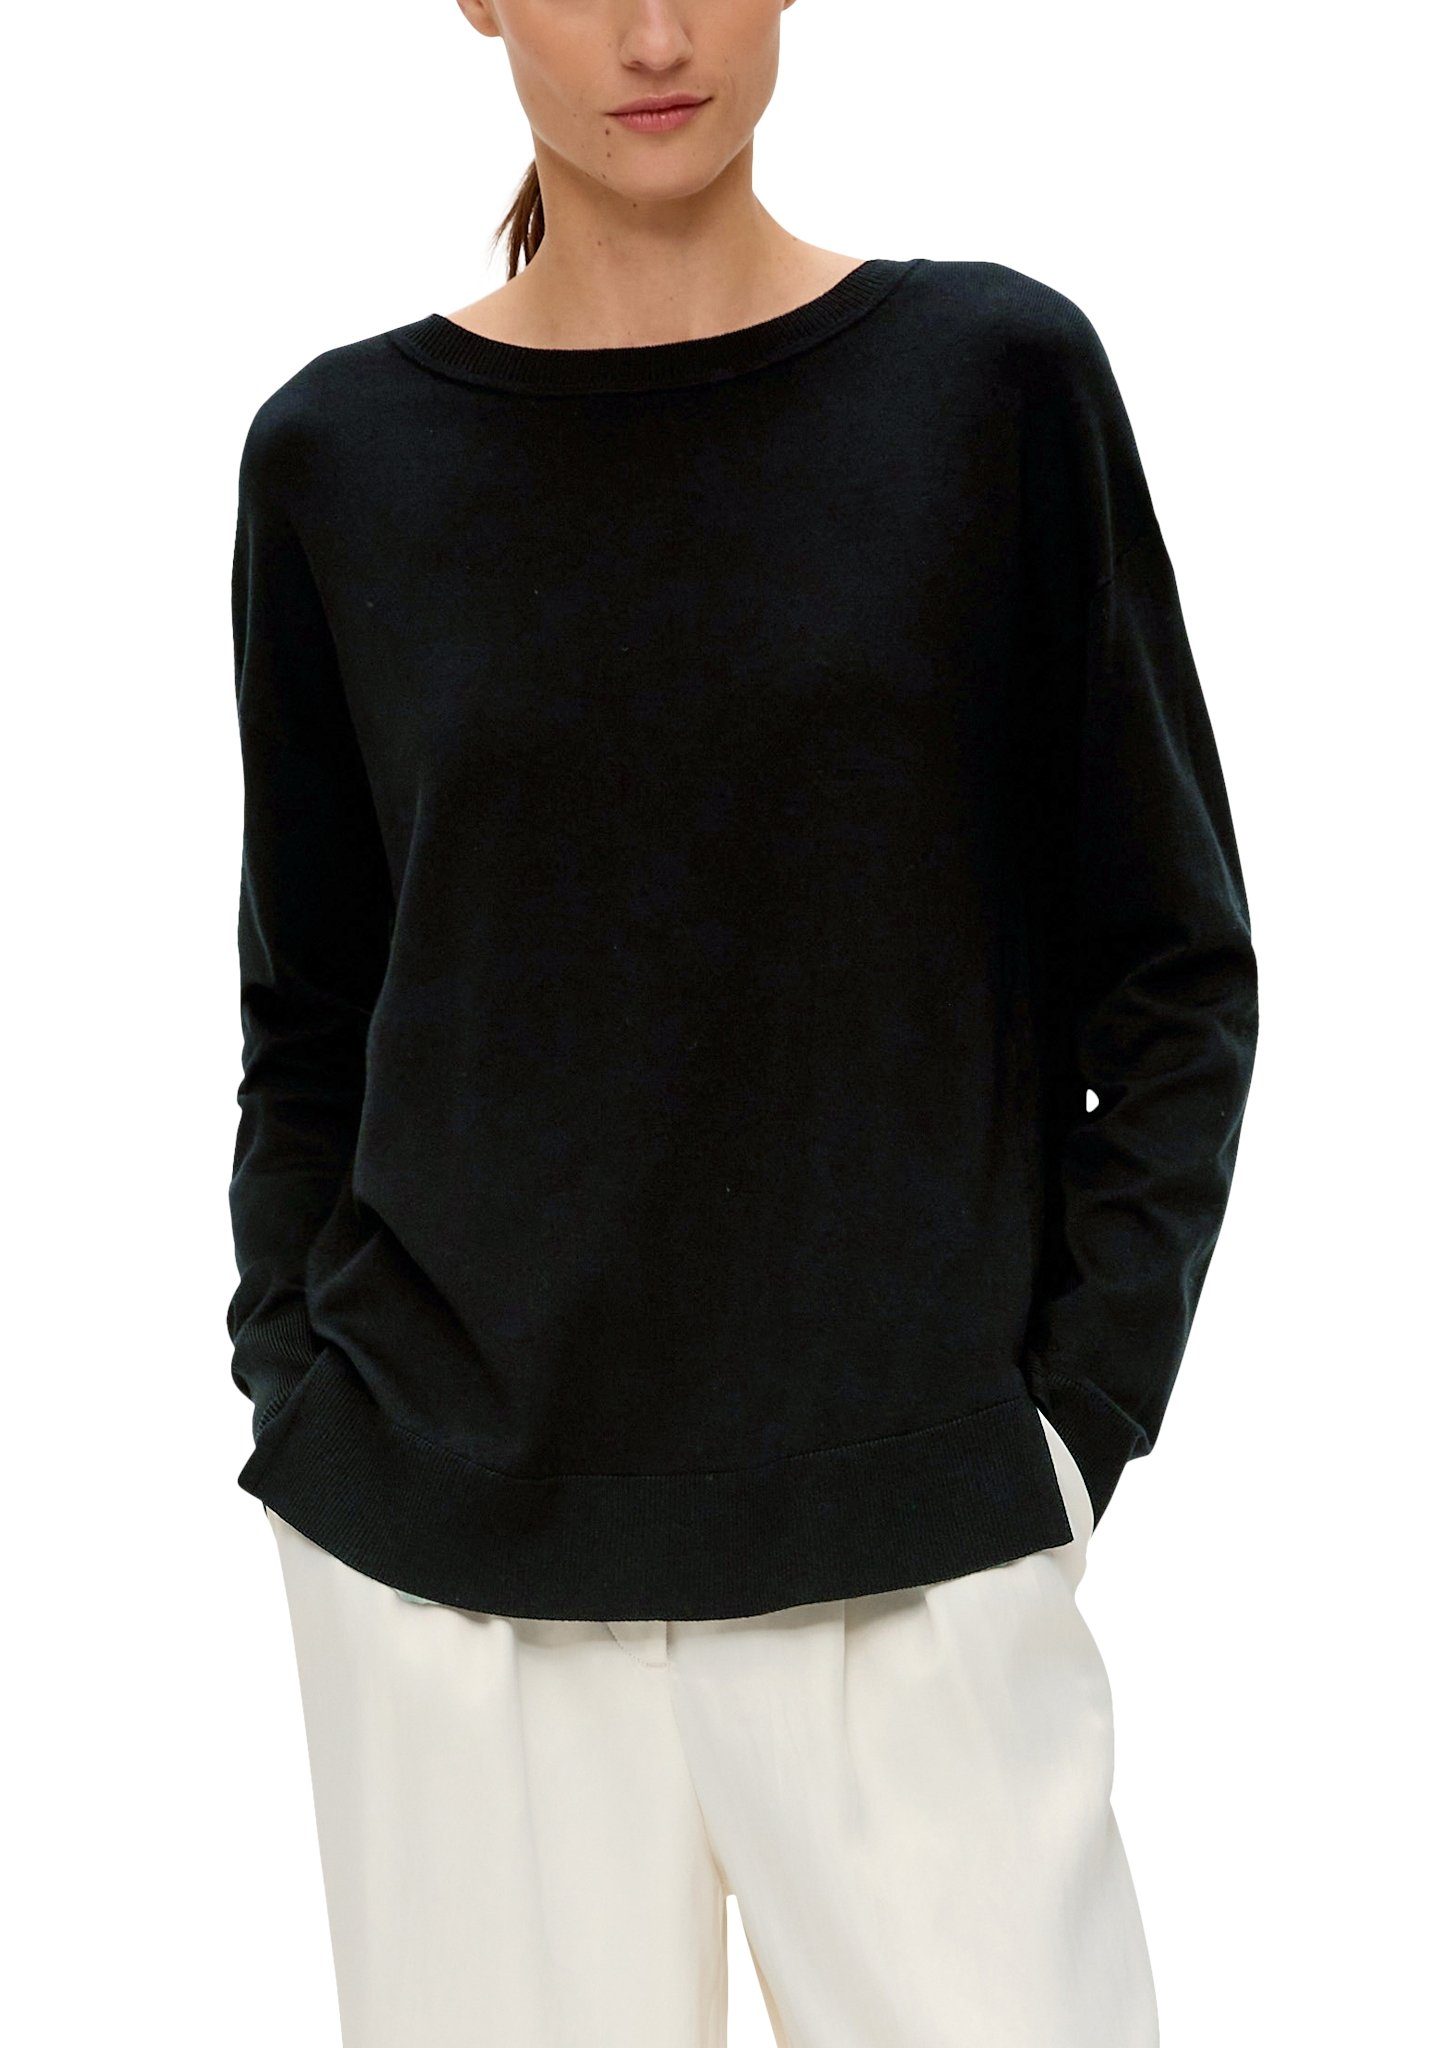 s.Oliver BLACK LABEL Longpullover mit grey/black Drop-Shoulder Look